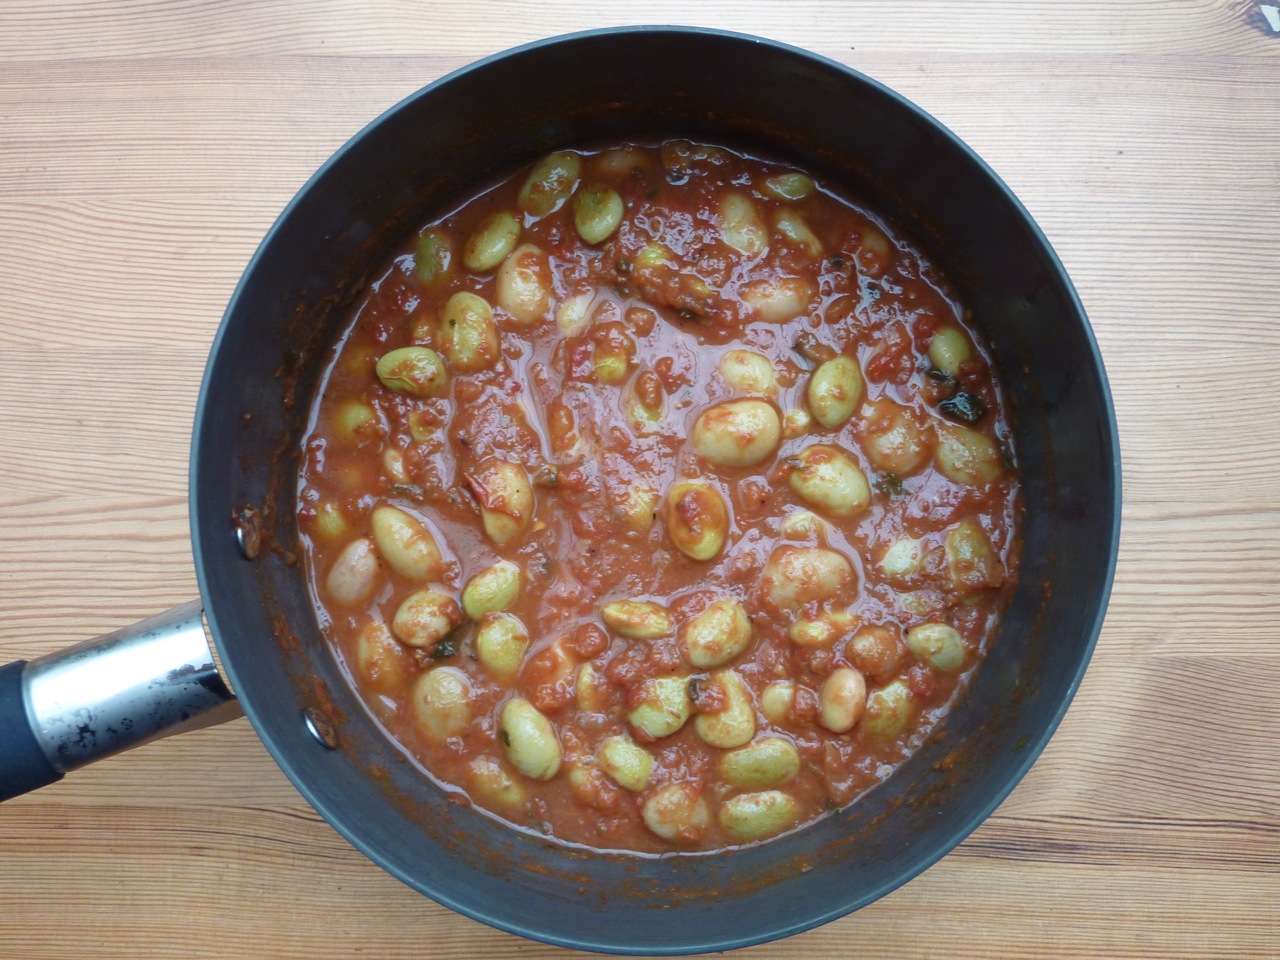 Borlotti beans in roasted tomato passata